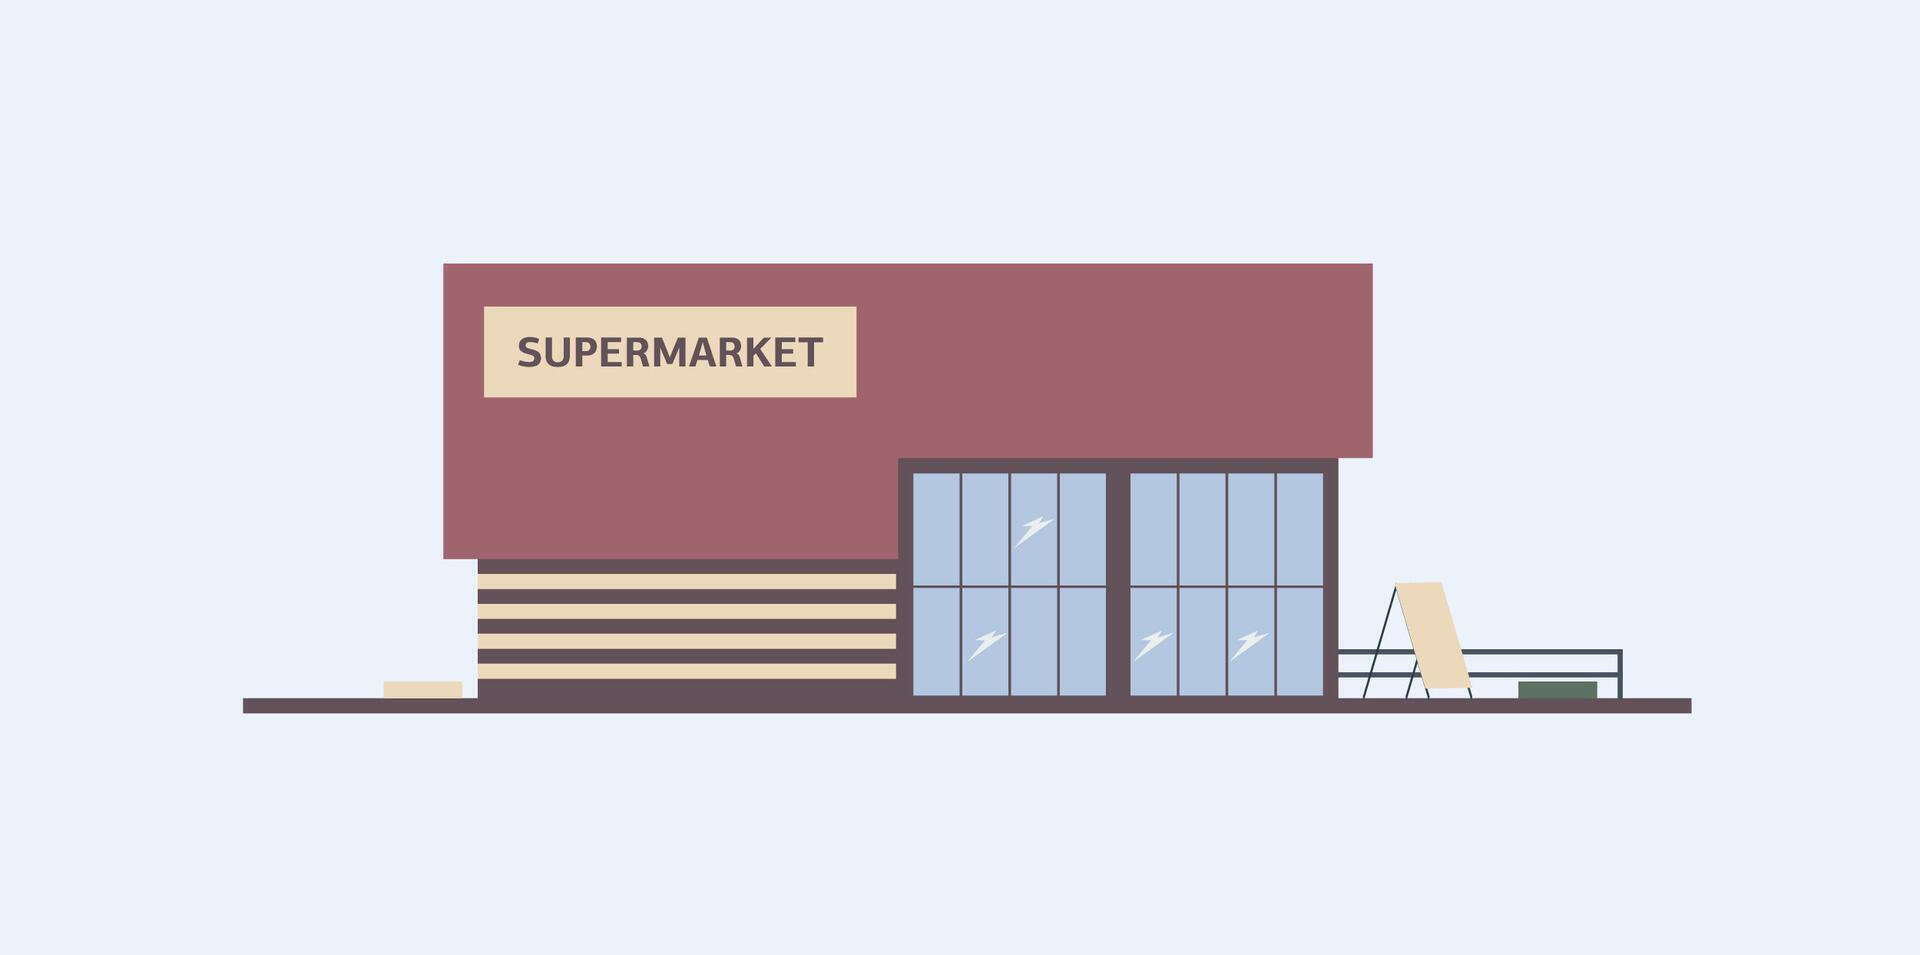 Gebäude von Supermarkt, Lebensmittelgeschäft Geschäft oder Essen Markt mit groß Fenster gebaut im modern architektonisch Stil. Einkaufen Center, kommerziell Eigentum oder echt Anwesen. bunt eben Vektor Illustration.